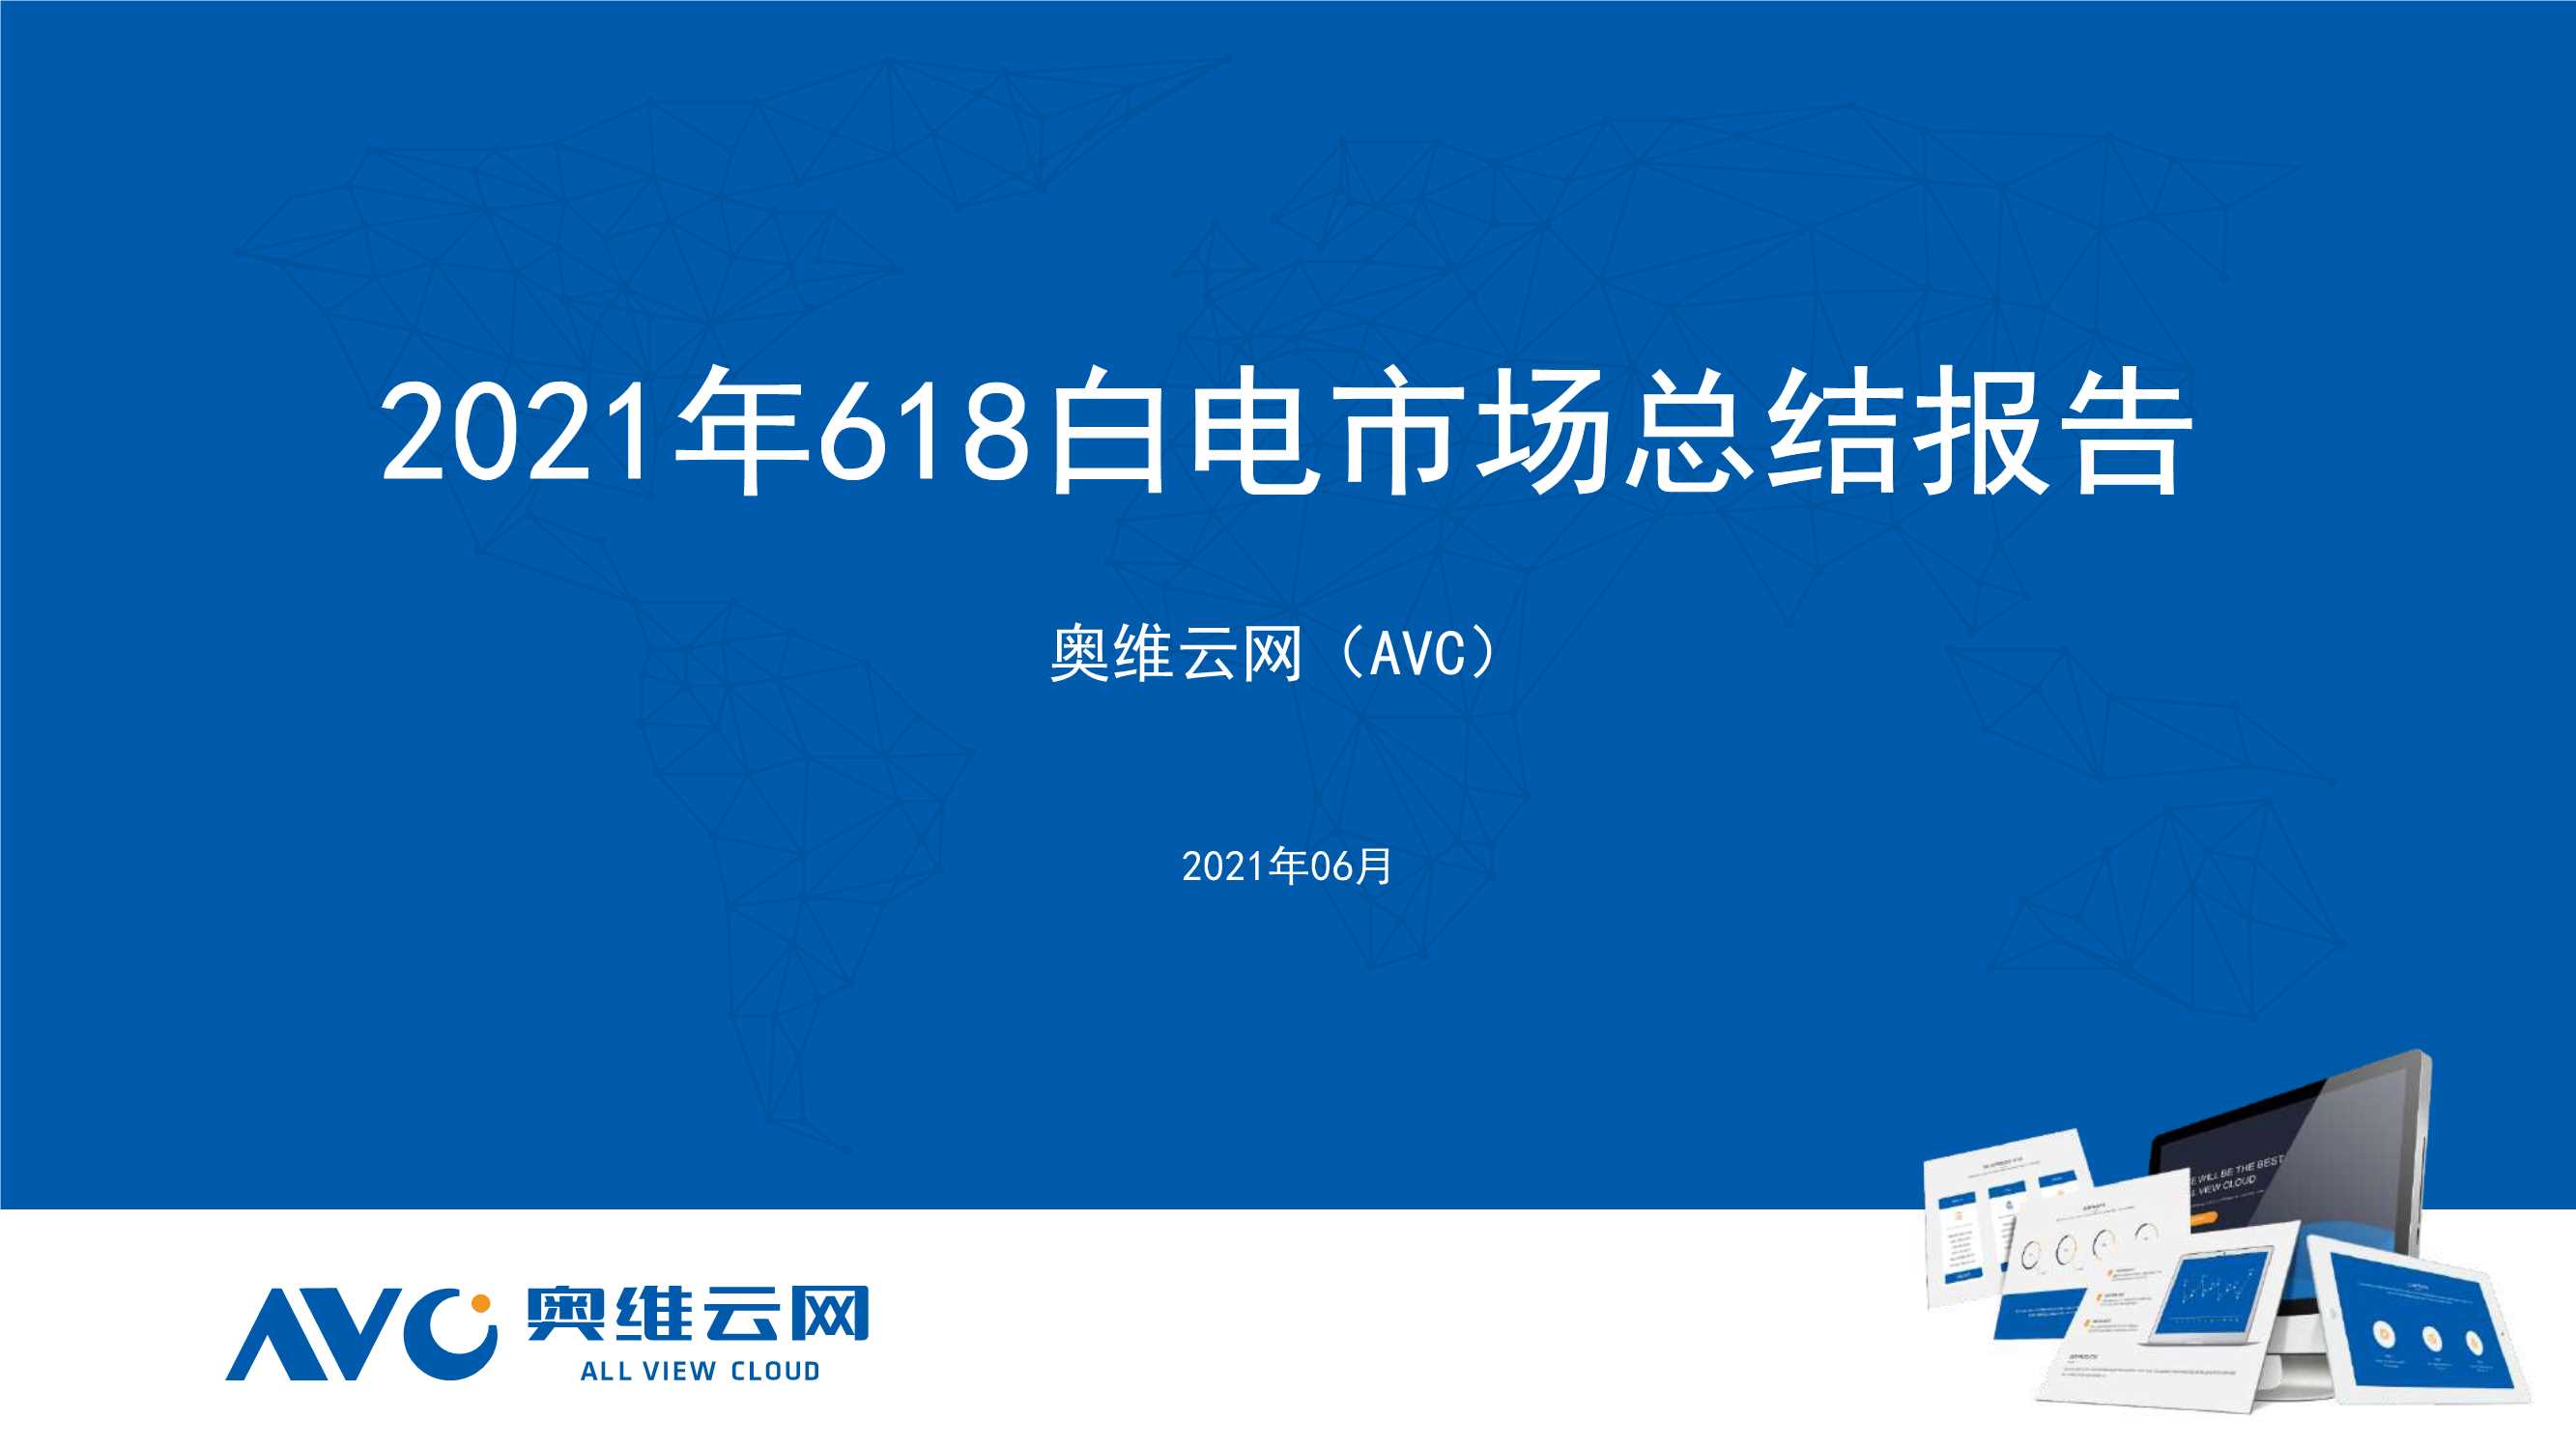 奥维云网-2021年618白电市场总结-2021.07-23页